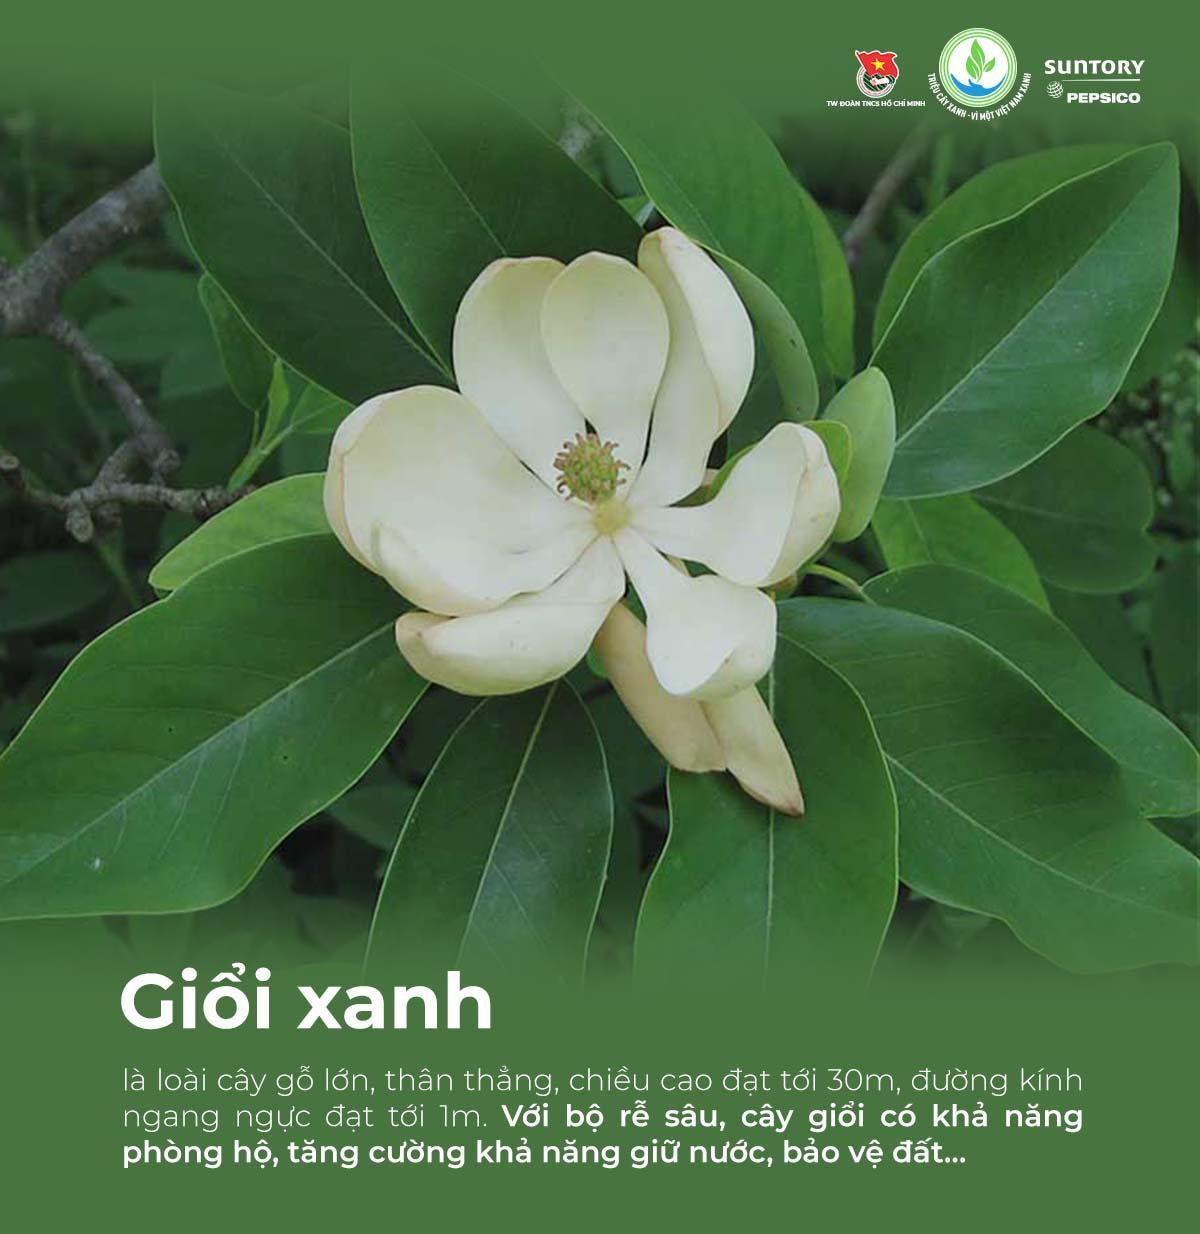 Giải mã các loại cây bản địa được chọn gieo mầm trong chương trình &quot;Triệu cây xanh - Vì một Việt Nam xanh&quot; - Ảnh 3.